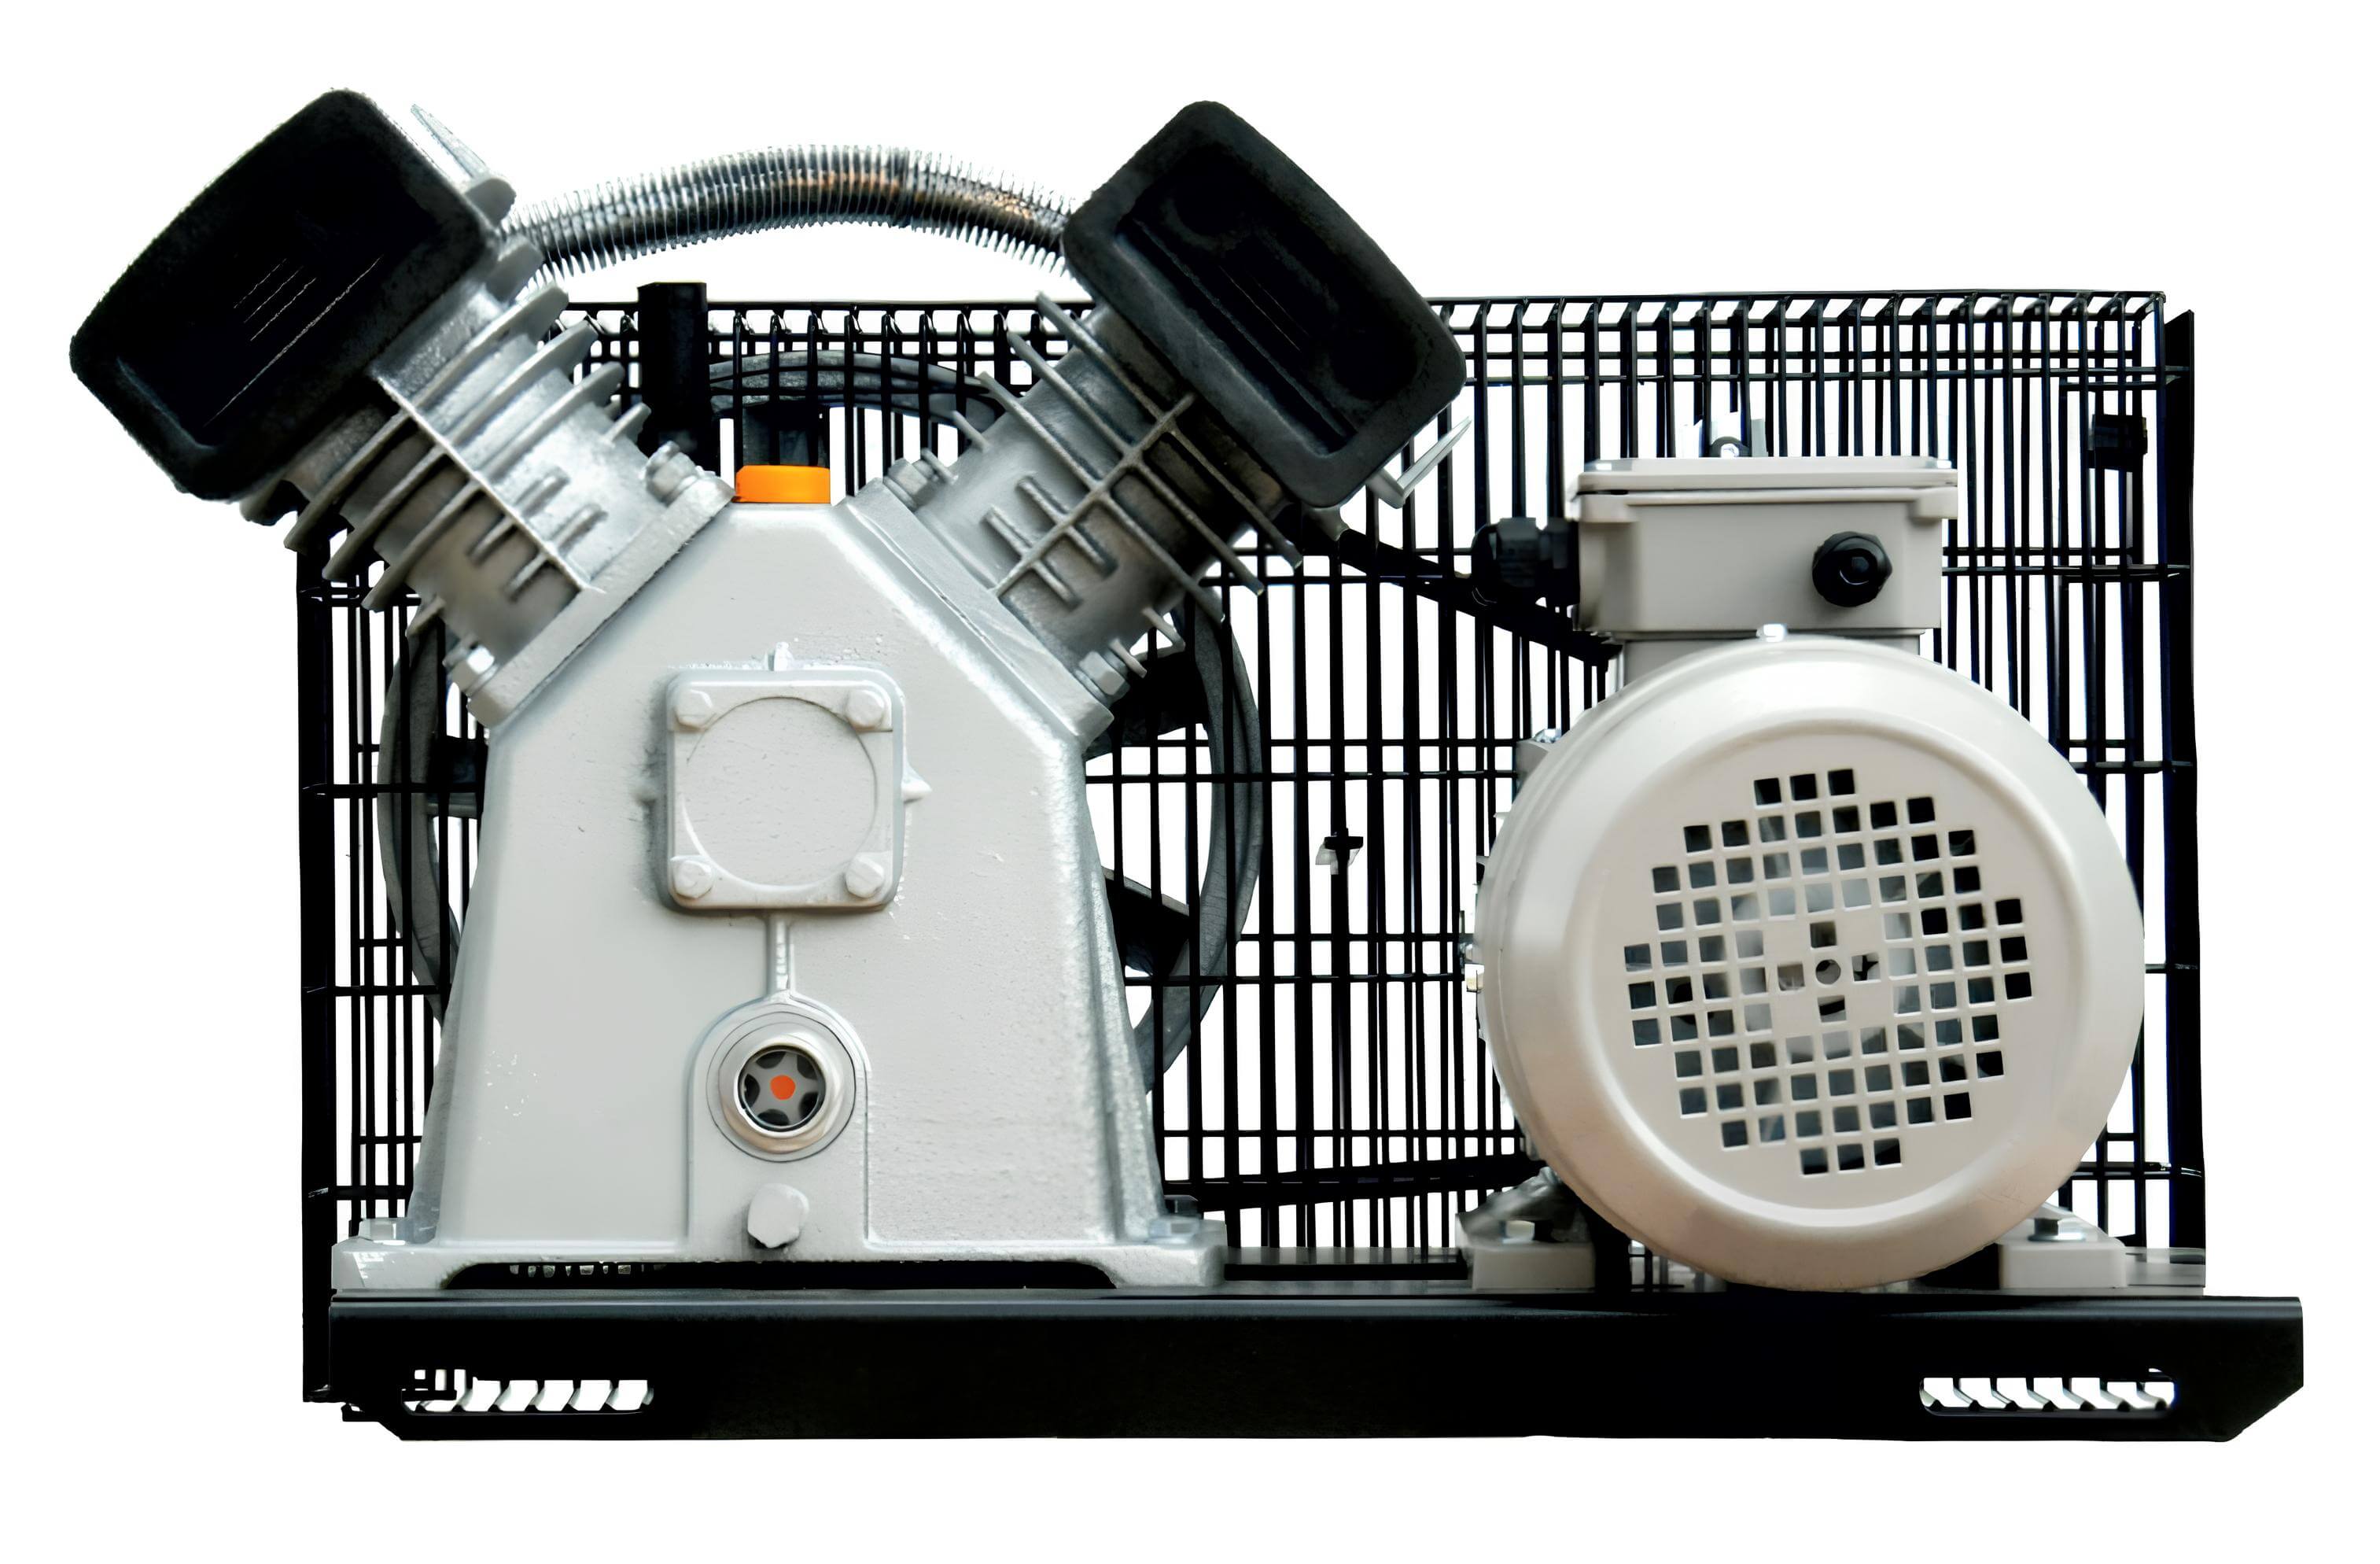 WALTER Litinový agregát GK420A na základovém rámu příkon 2,2 kW, sací výkon 420 l/min, tlak 10 bar, napětí 230/50 V/Hz